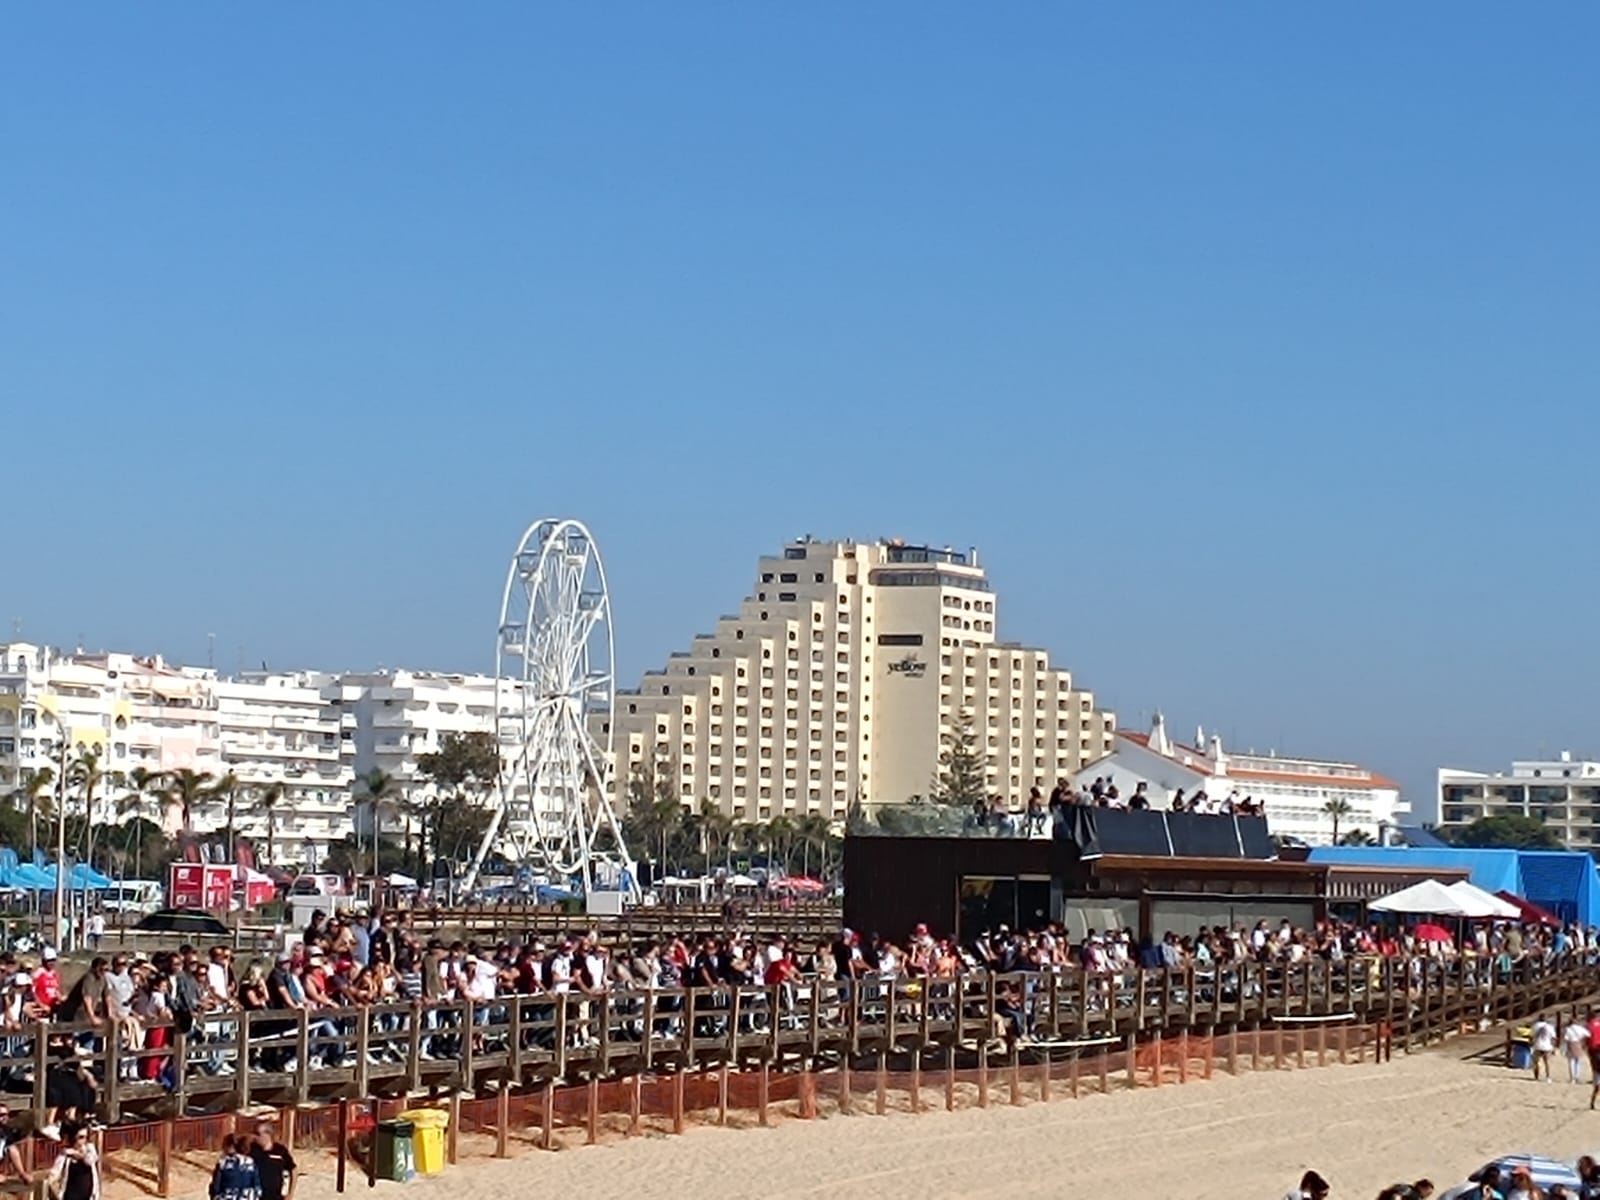 Monte Gordo Sand Experience marca estreia em Portugal da Taça do Mundo de  Corridas em Areia